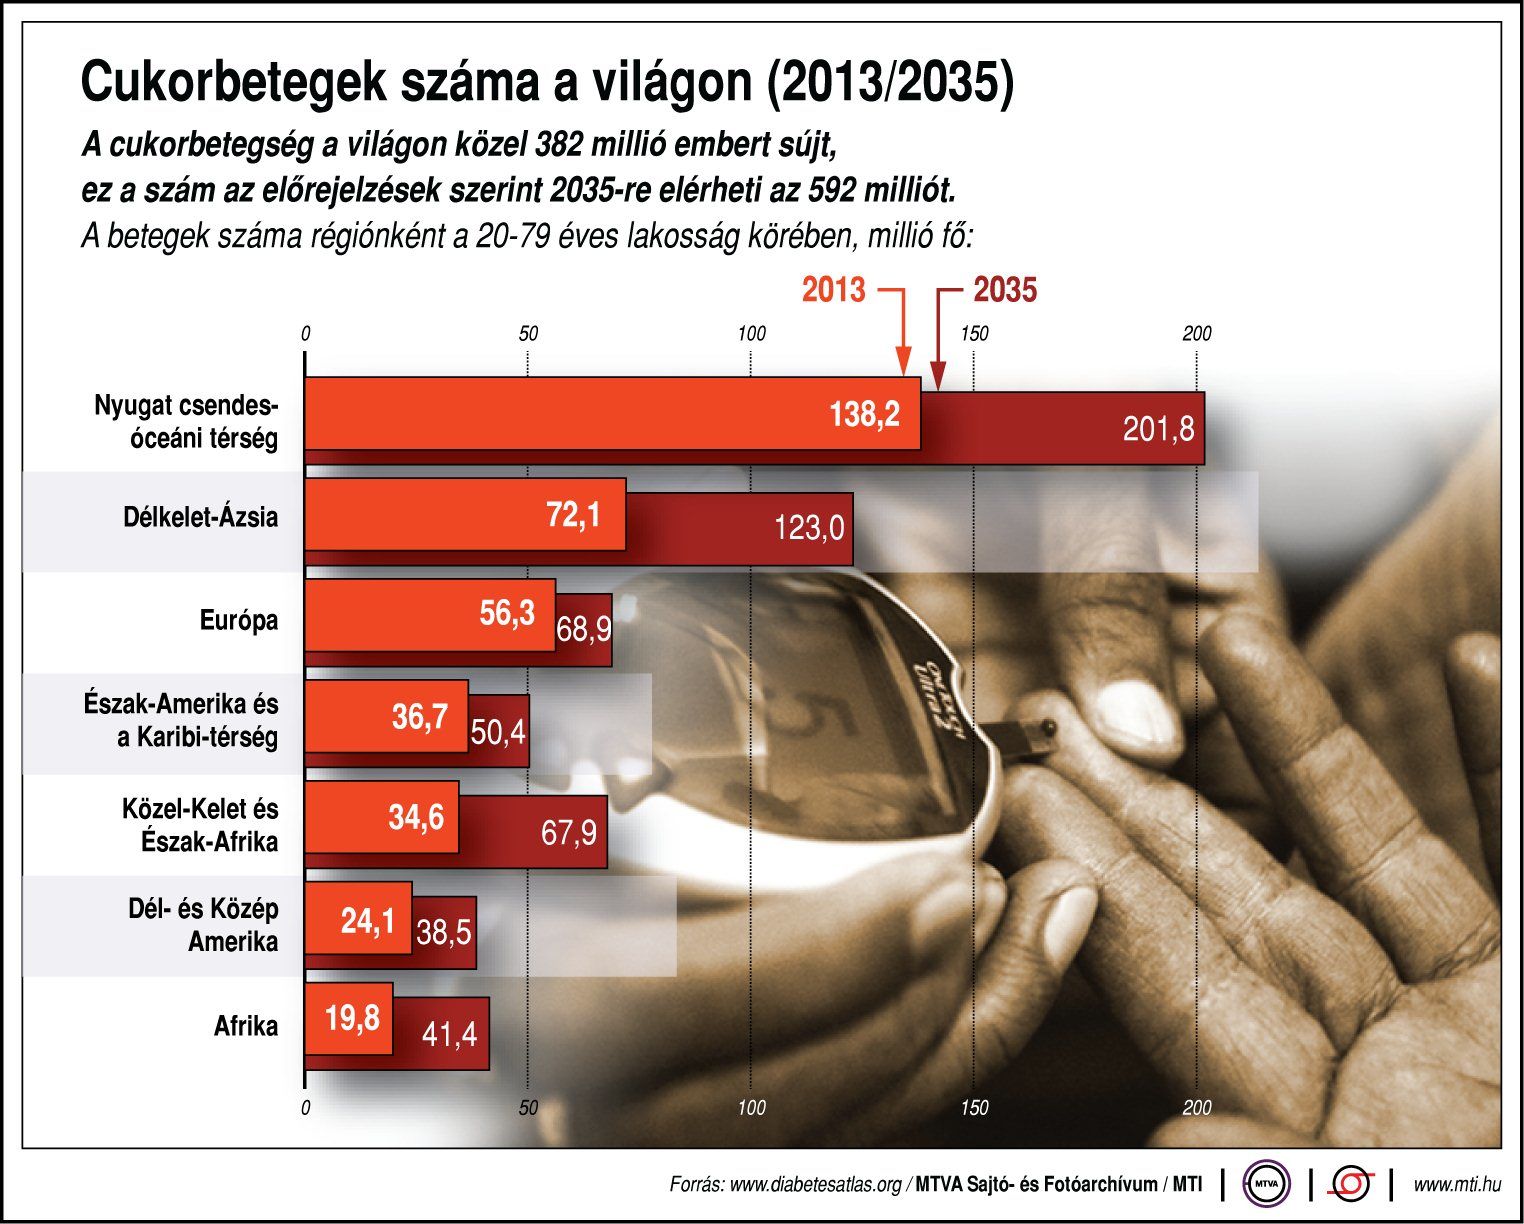 cukorbetegek száma magyarországon